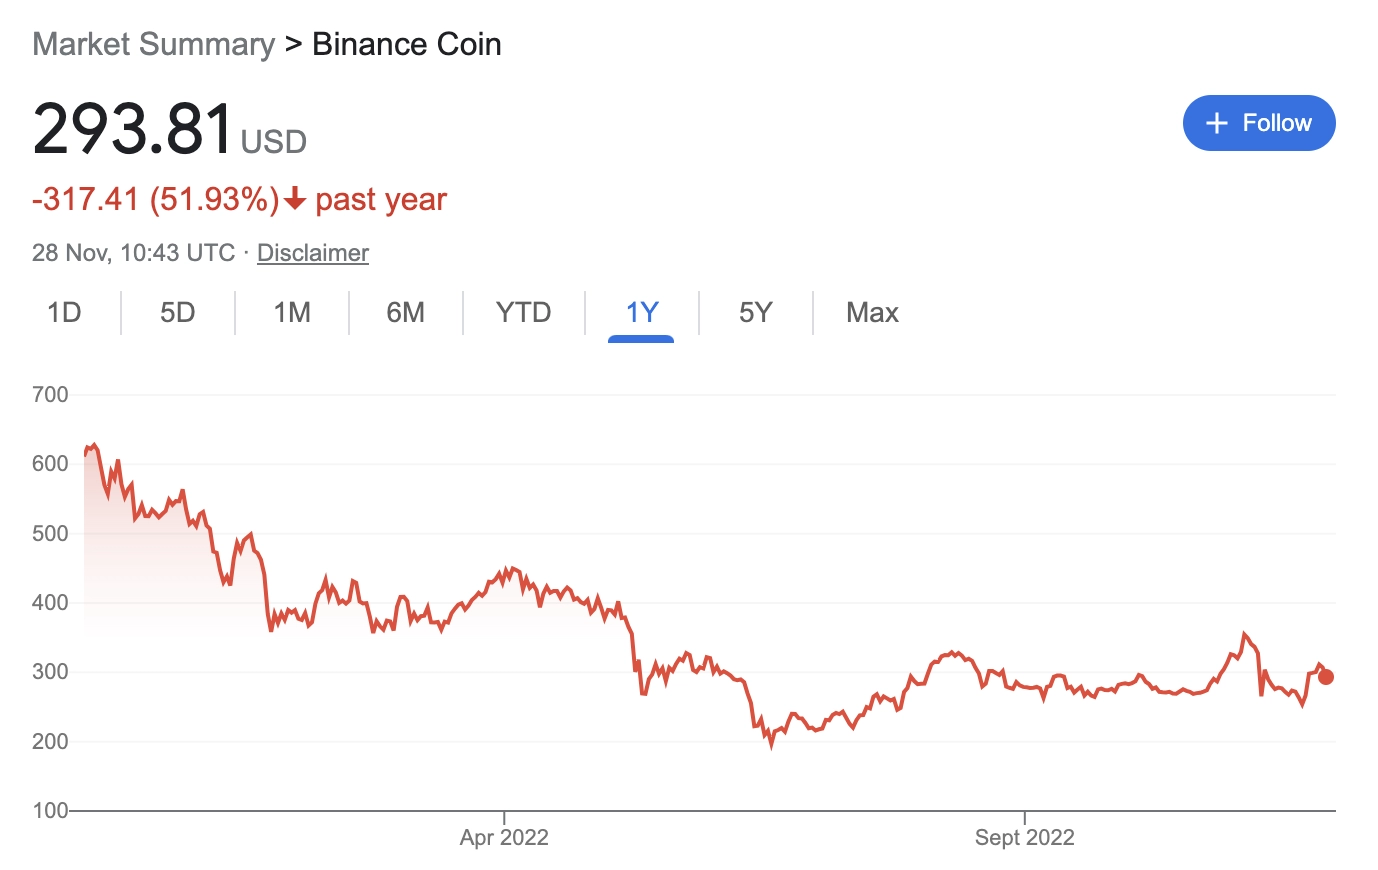 BNB - Binance Coin (Google Finance)